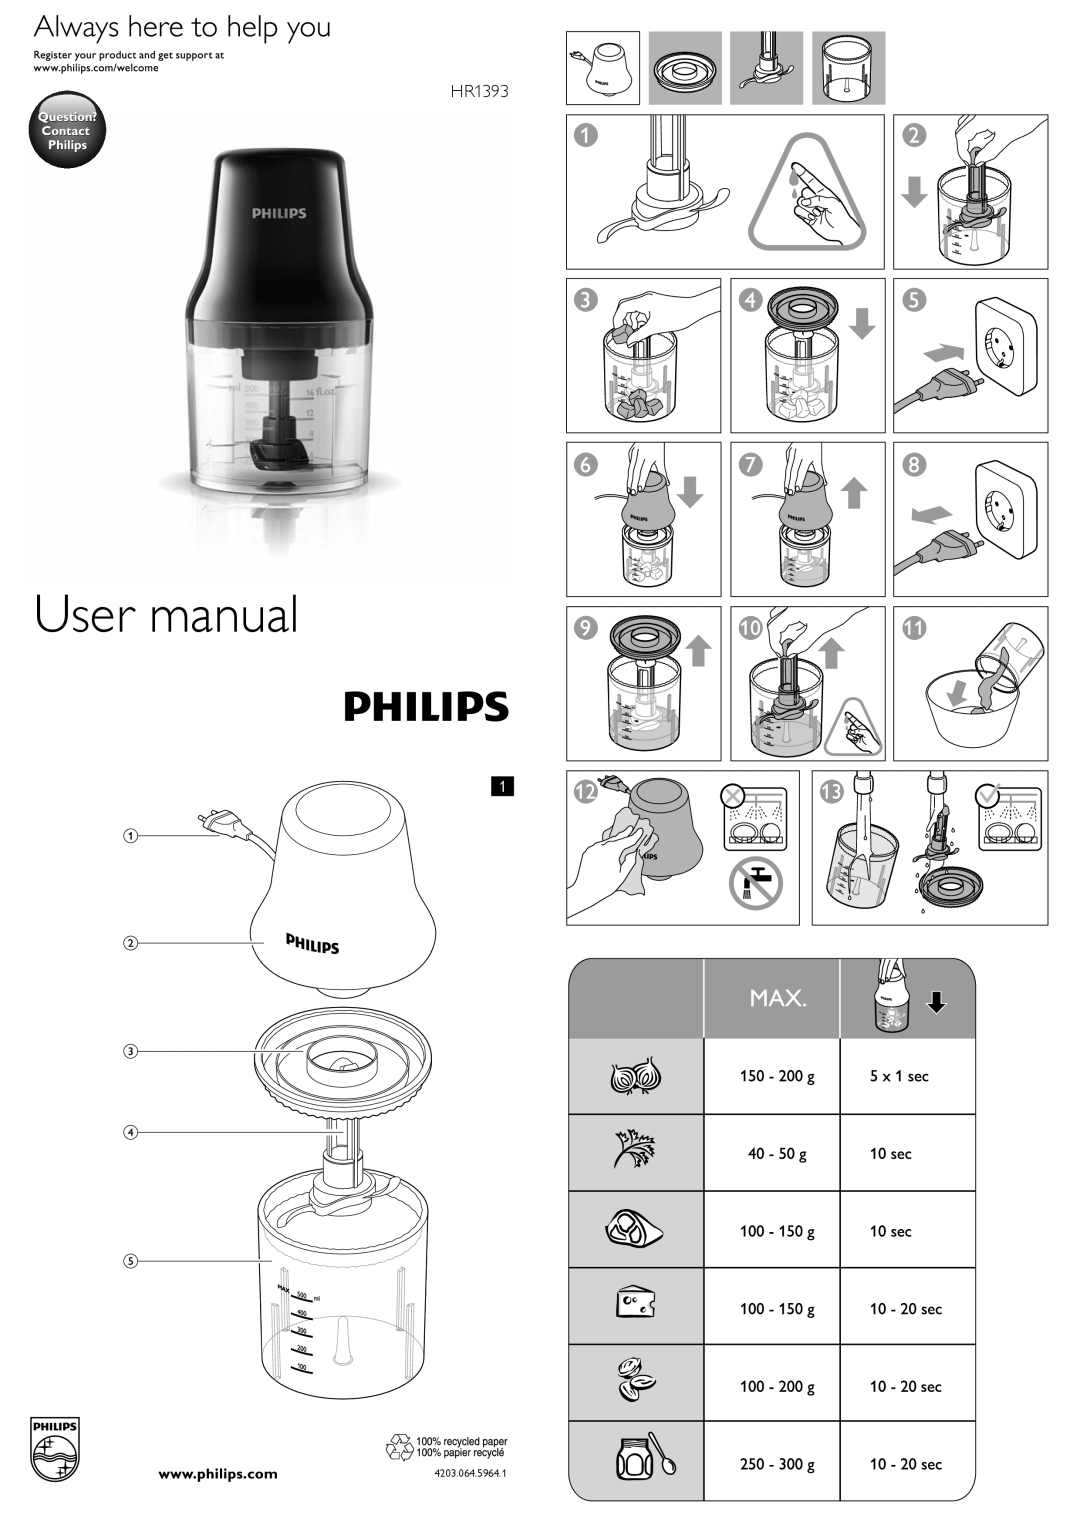 Philips HR1393 user manual User manual, 4203.064.5964.1 